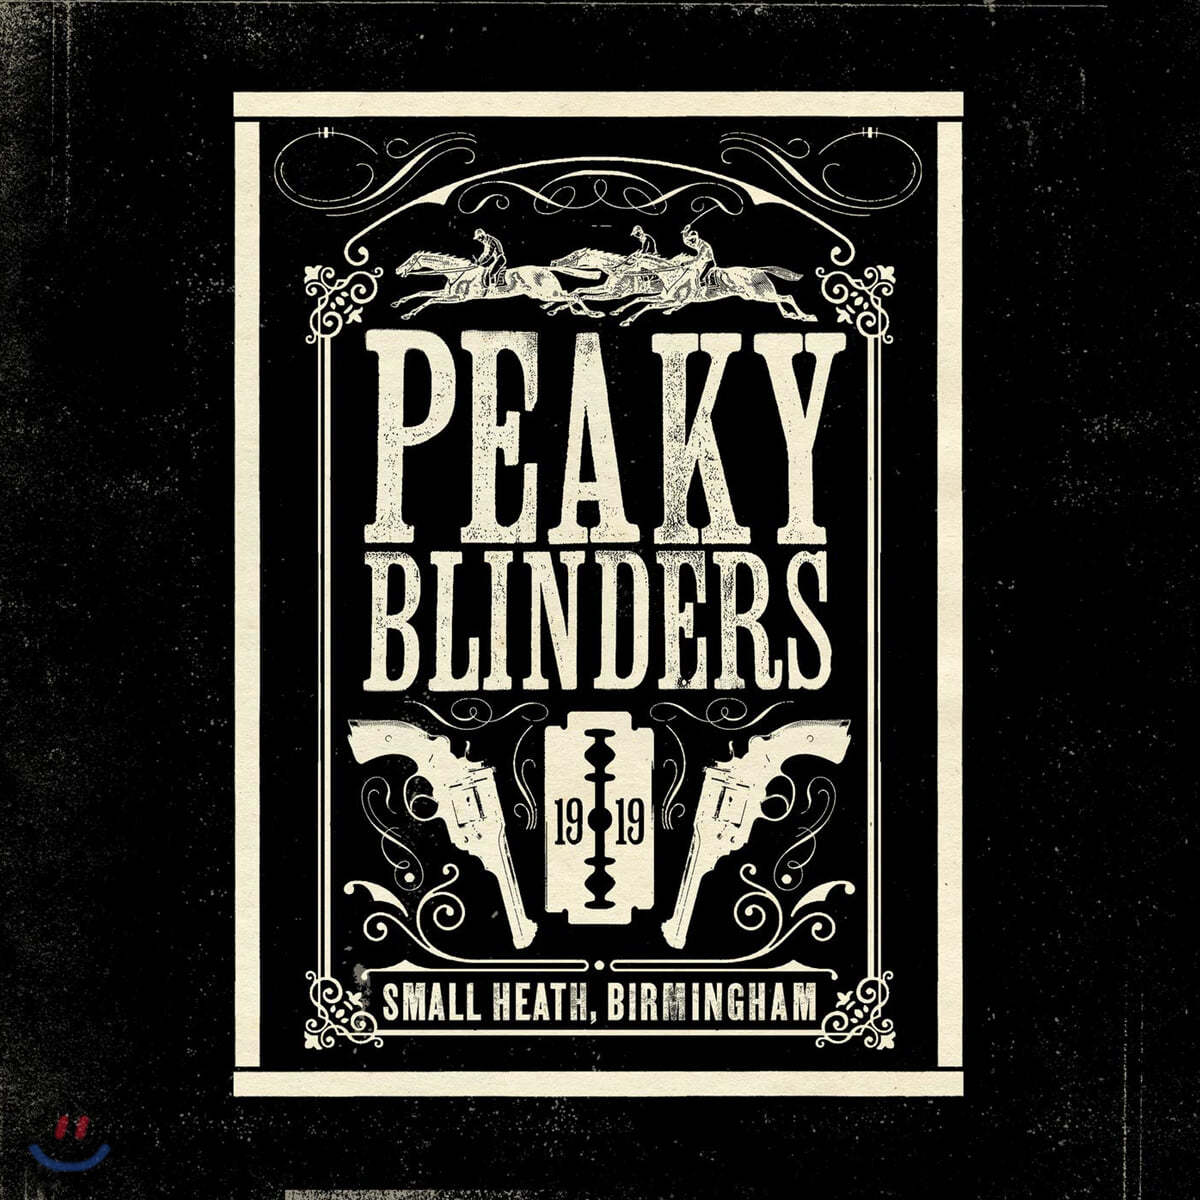 피키 블라인더스 드라마음악 (Peaky Blinders The Official Soundtrack)